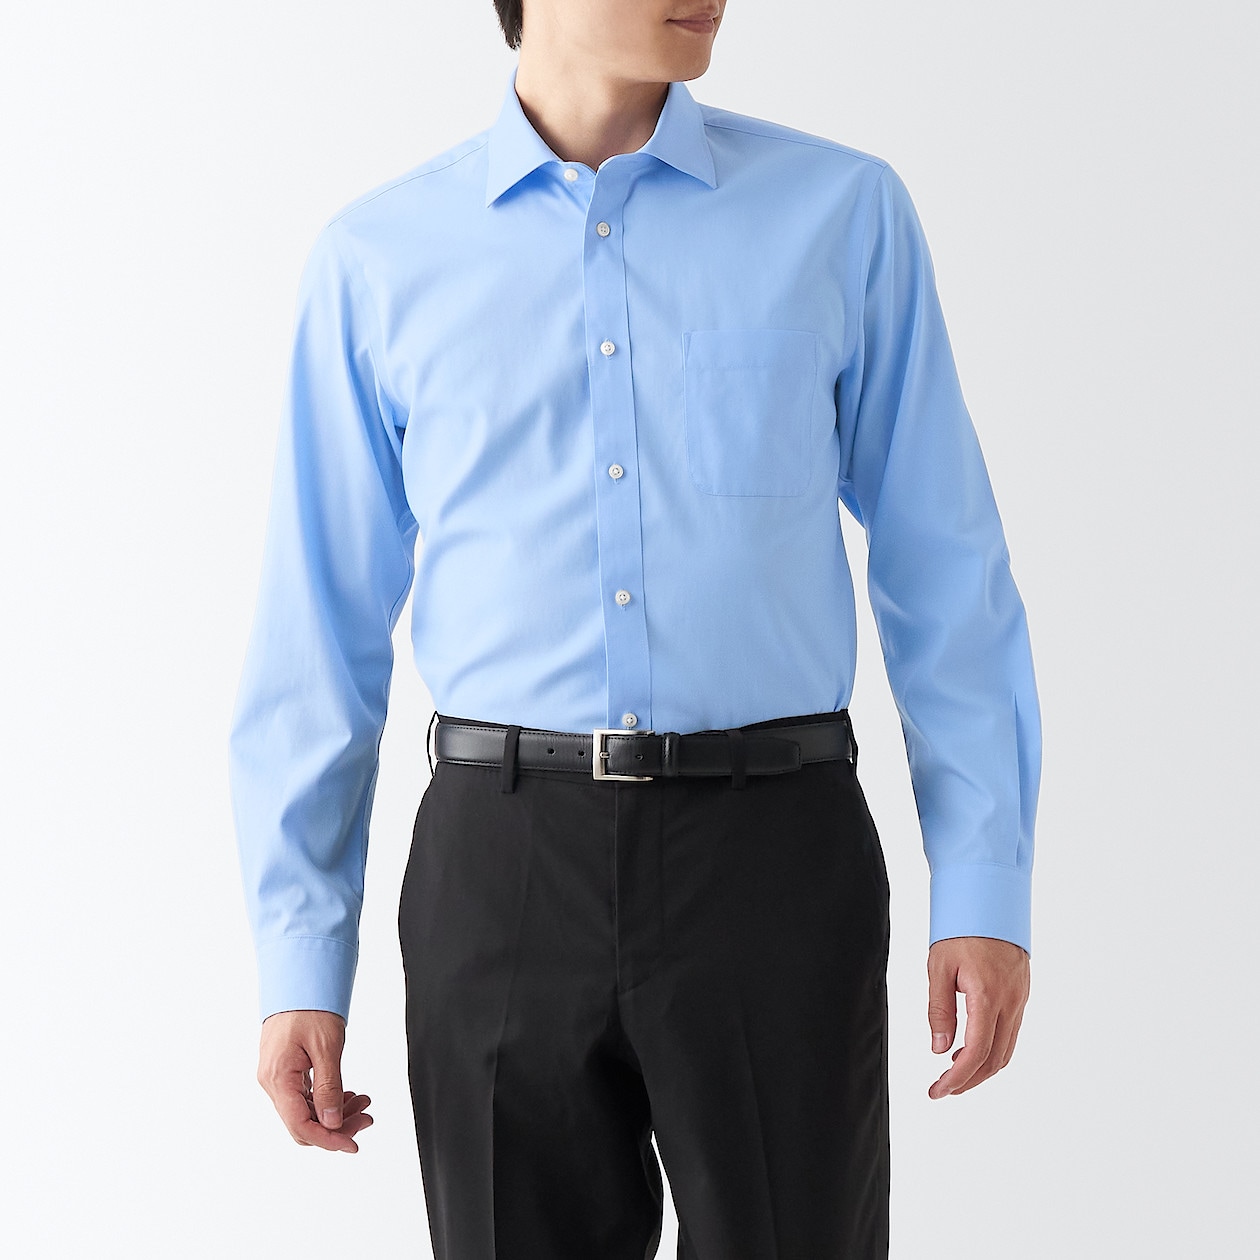 ノンアイロンビジネスセミワイドカラー長袖シャツ | 無印良品